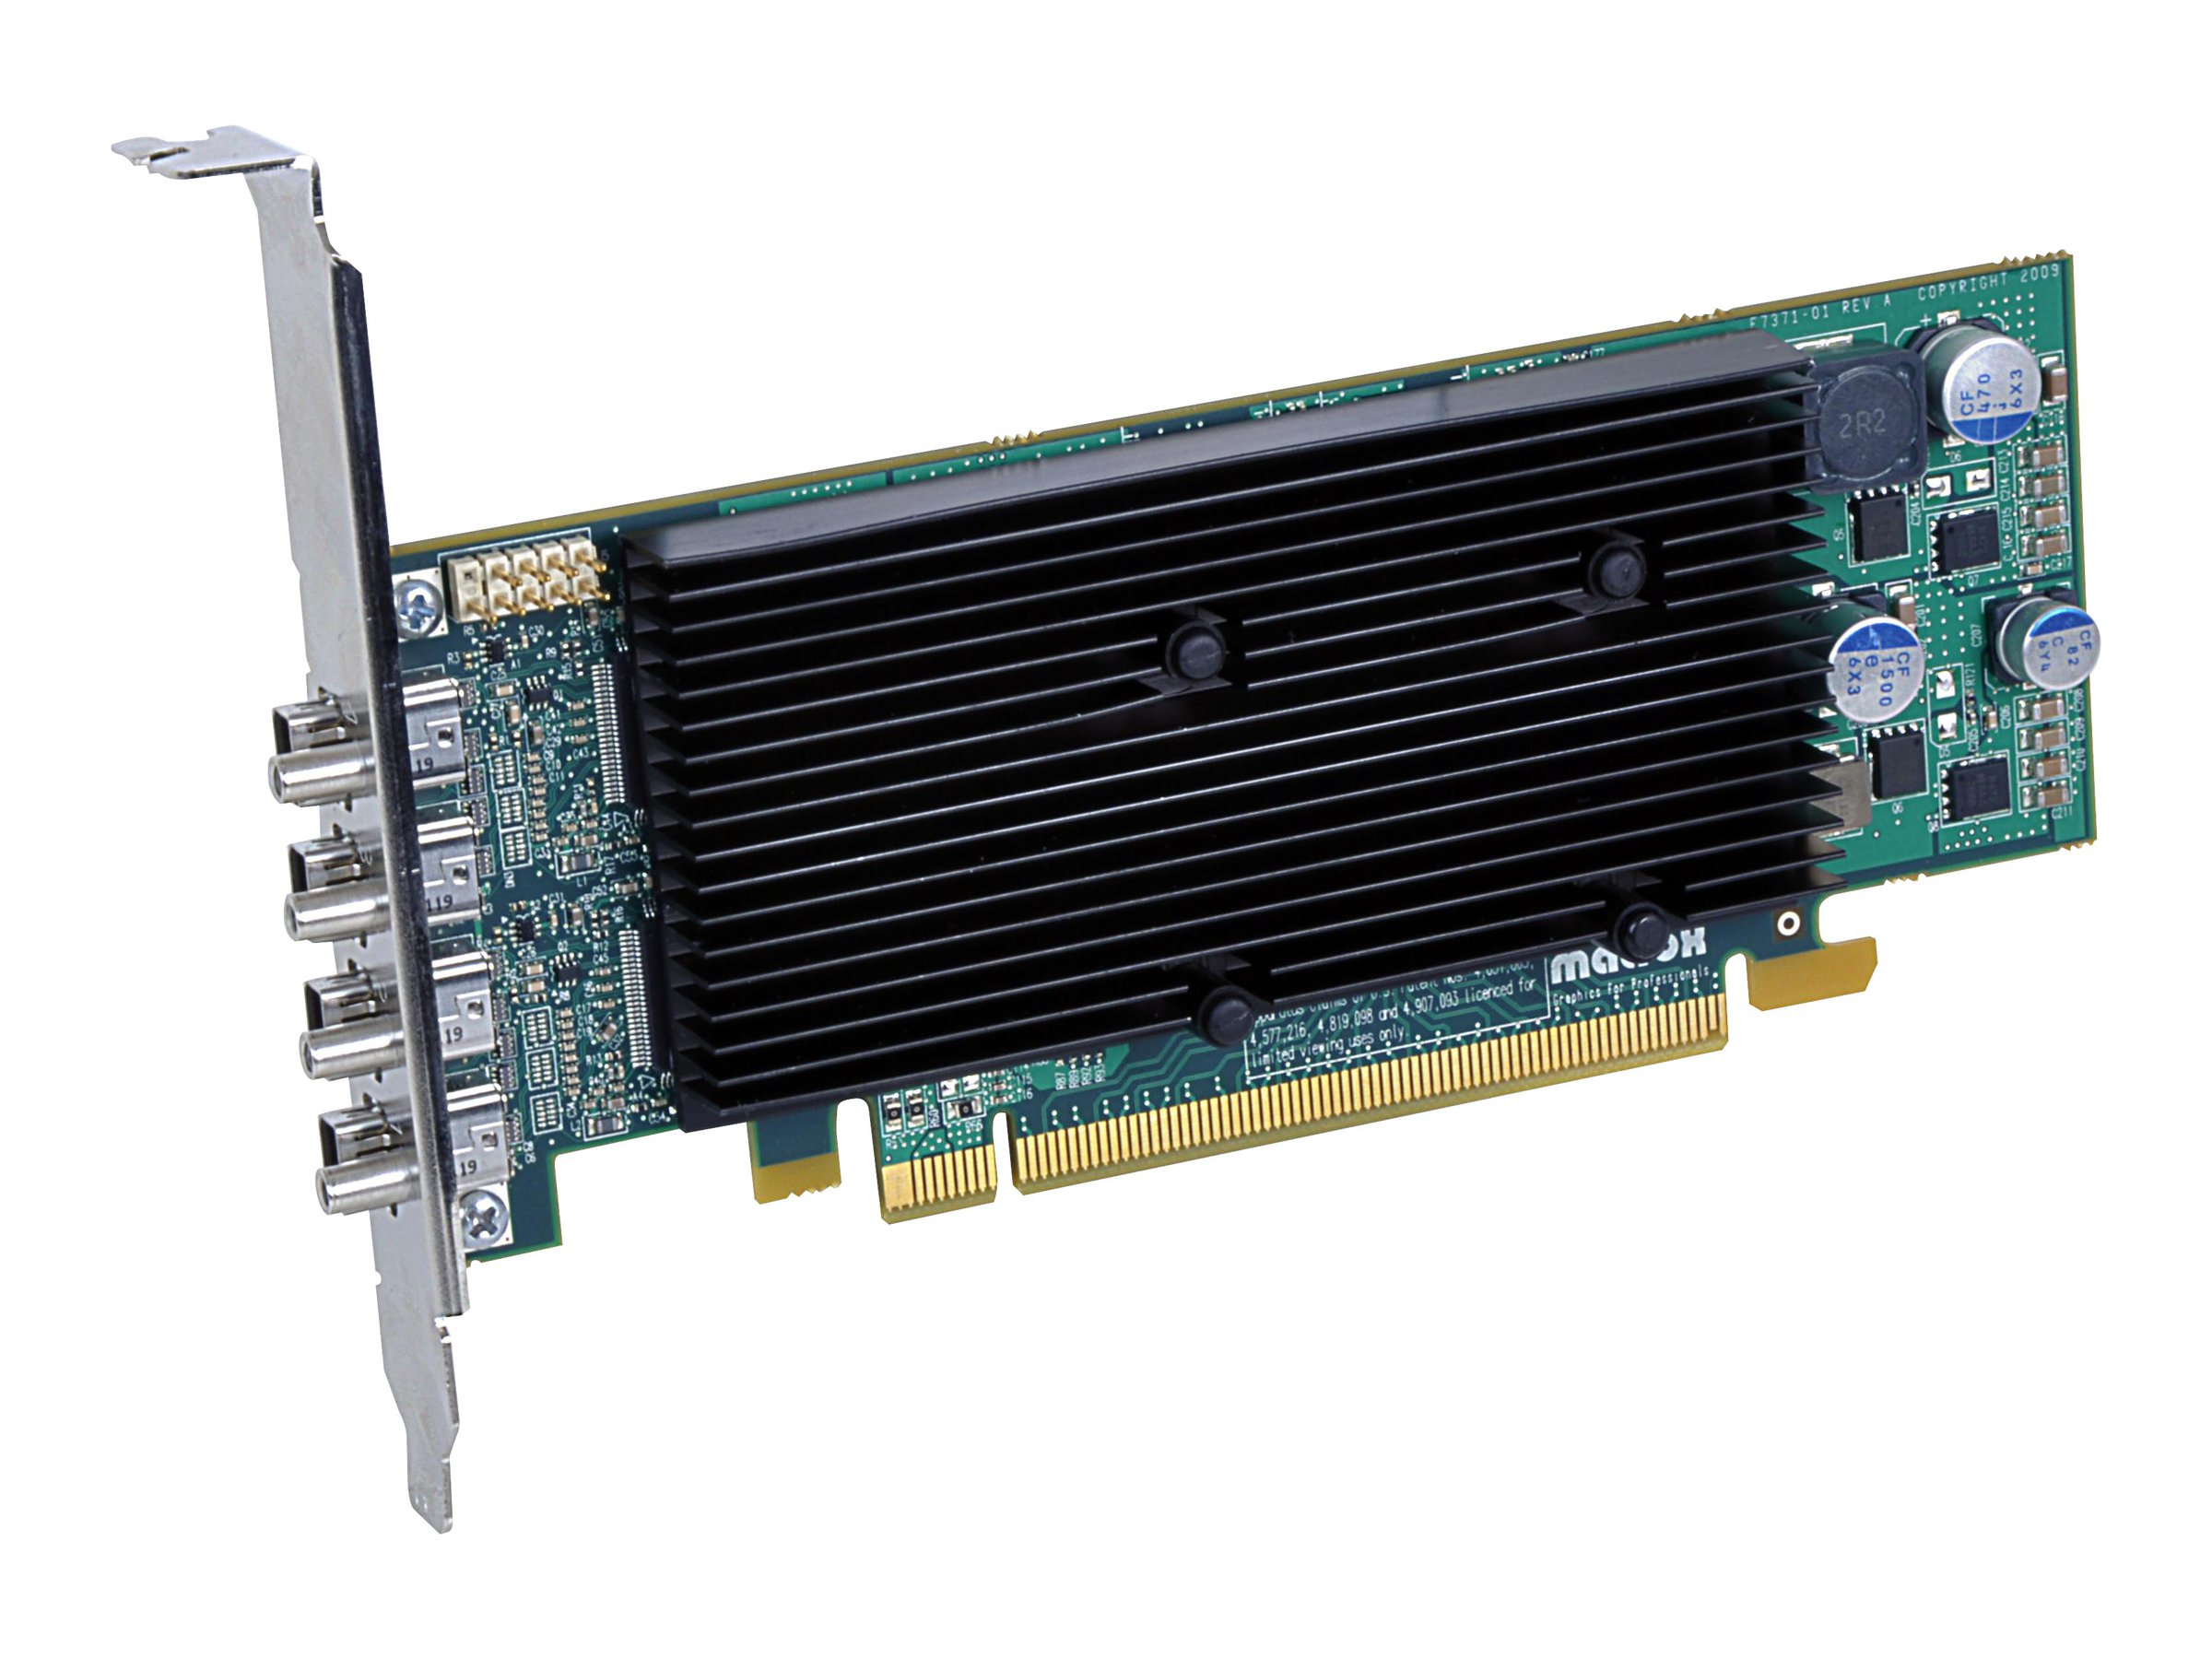 Matrox M9148 - Grafikkarten - M9148 - 1 GB - PCIe x16 Low-Profile - 4 x Mini DisplayPort